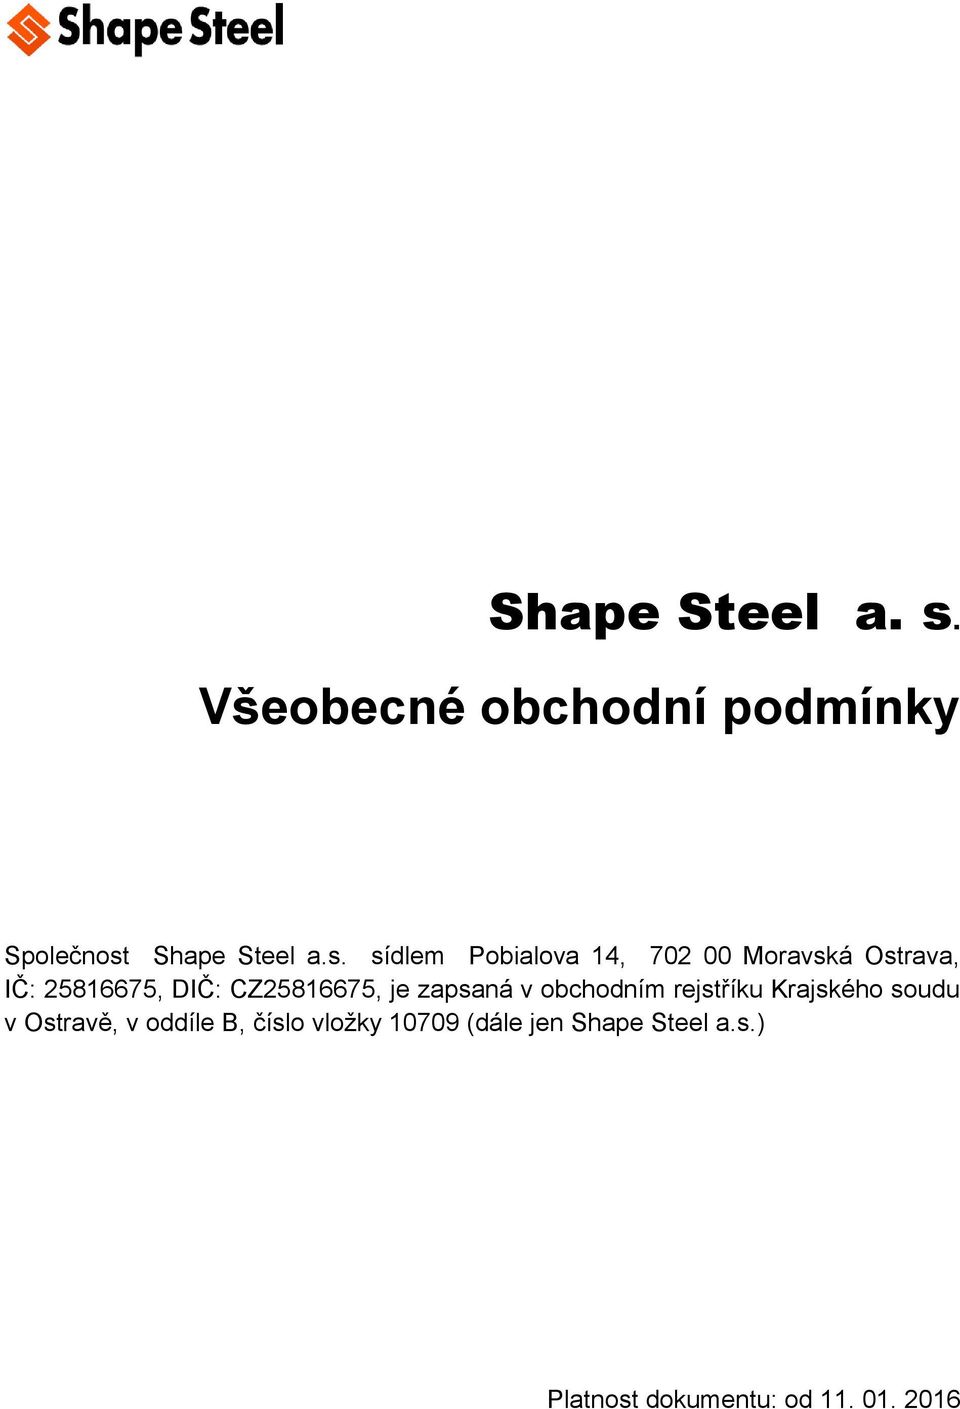 Shape Steel a.s.